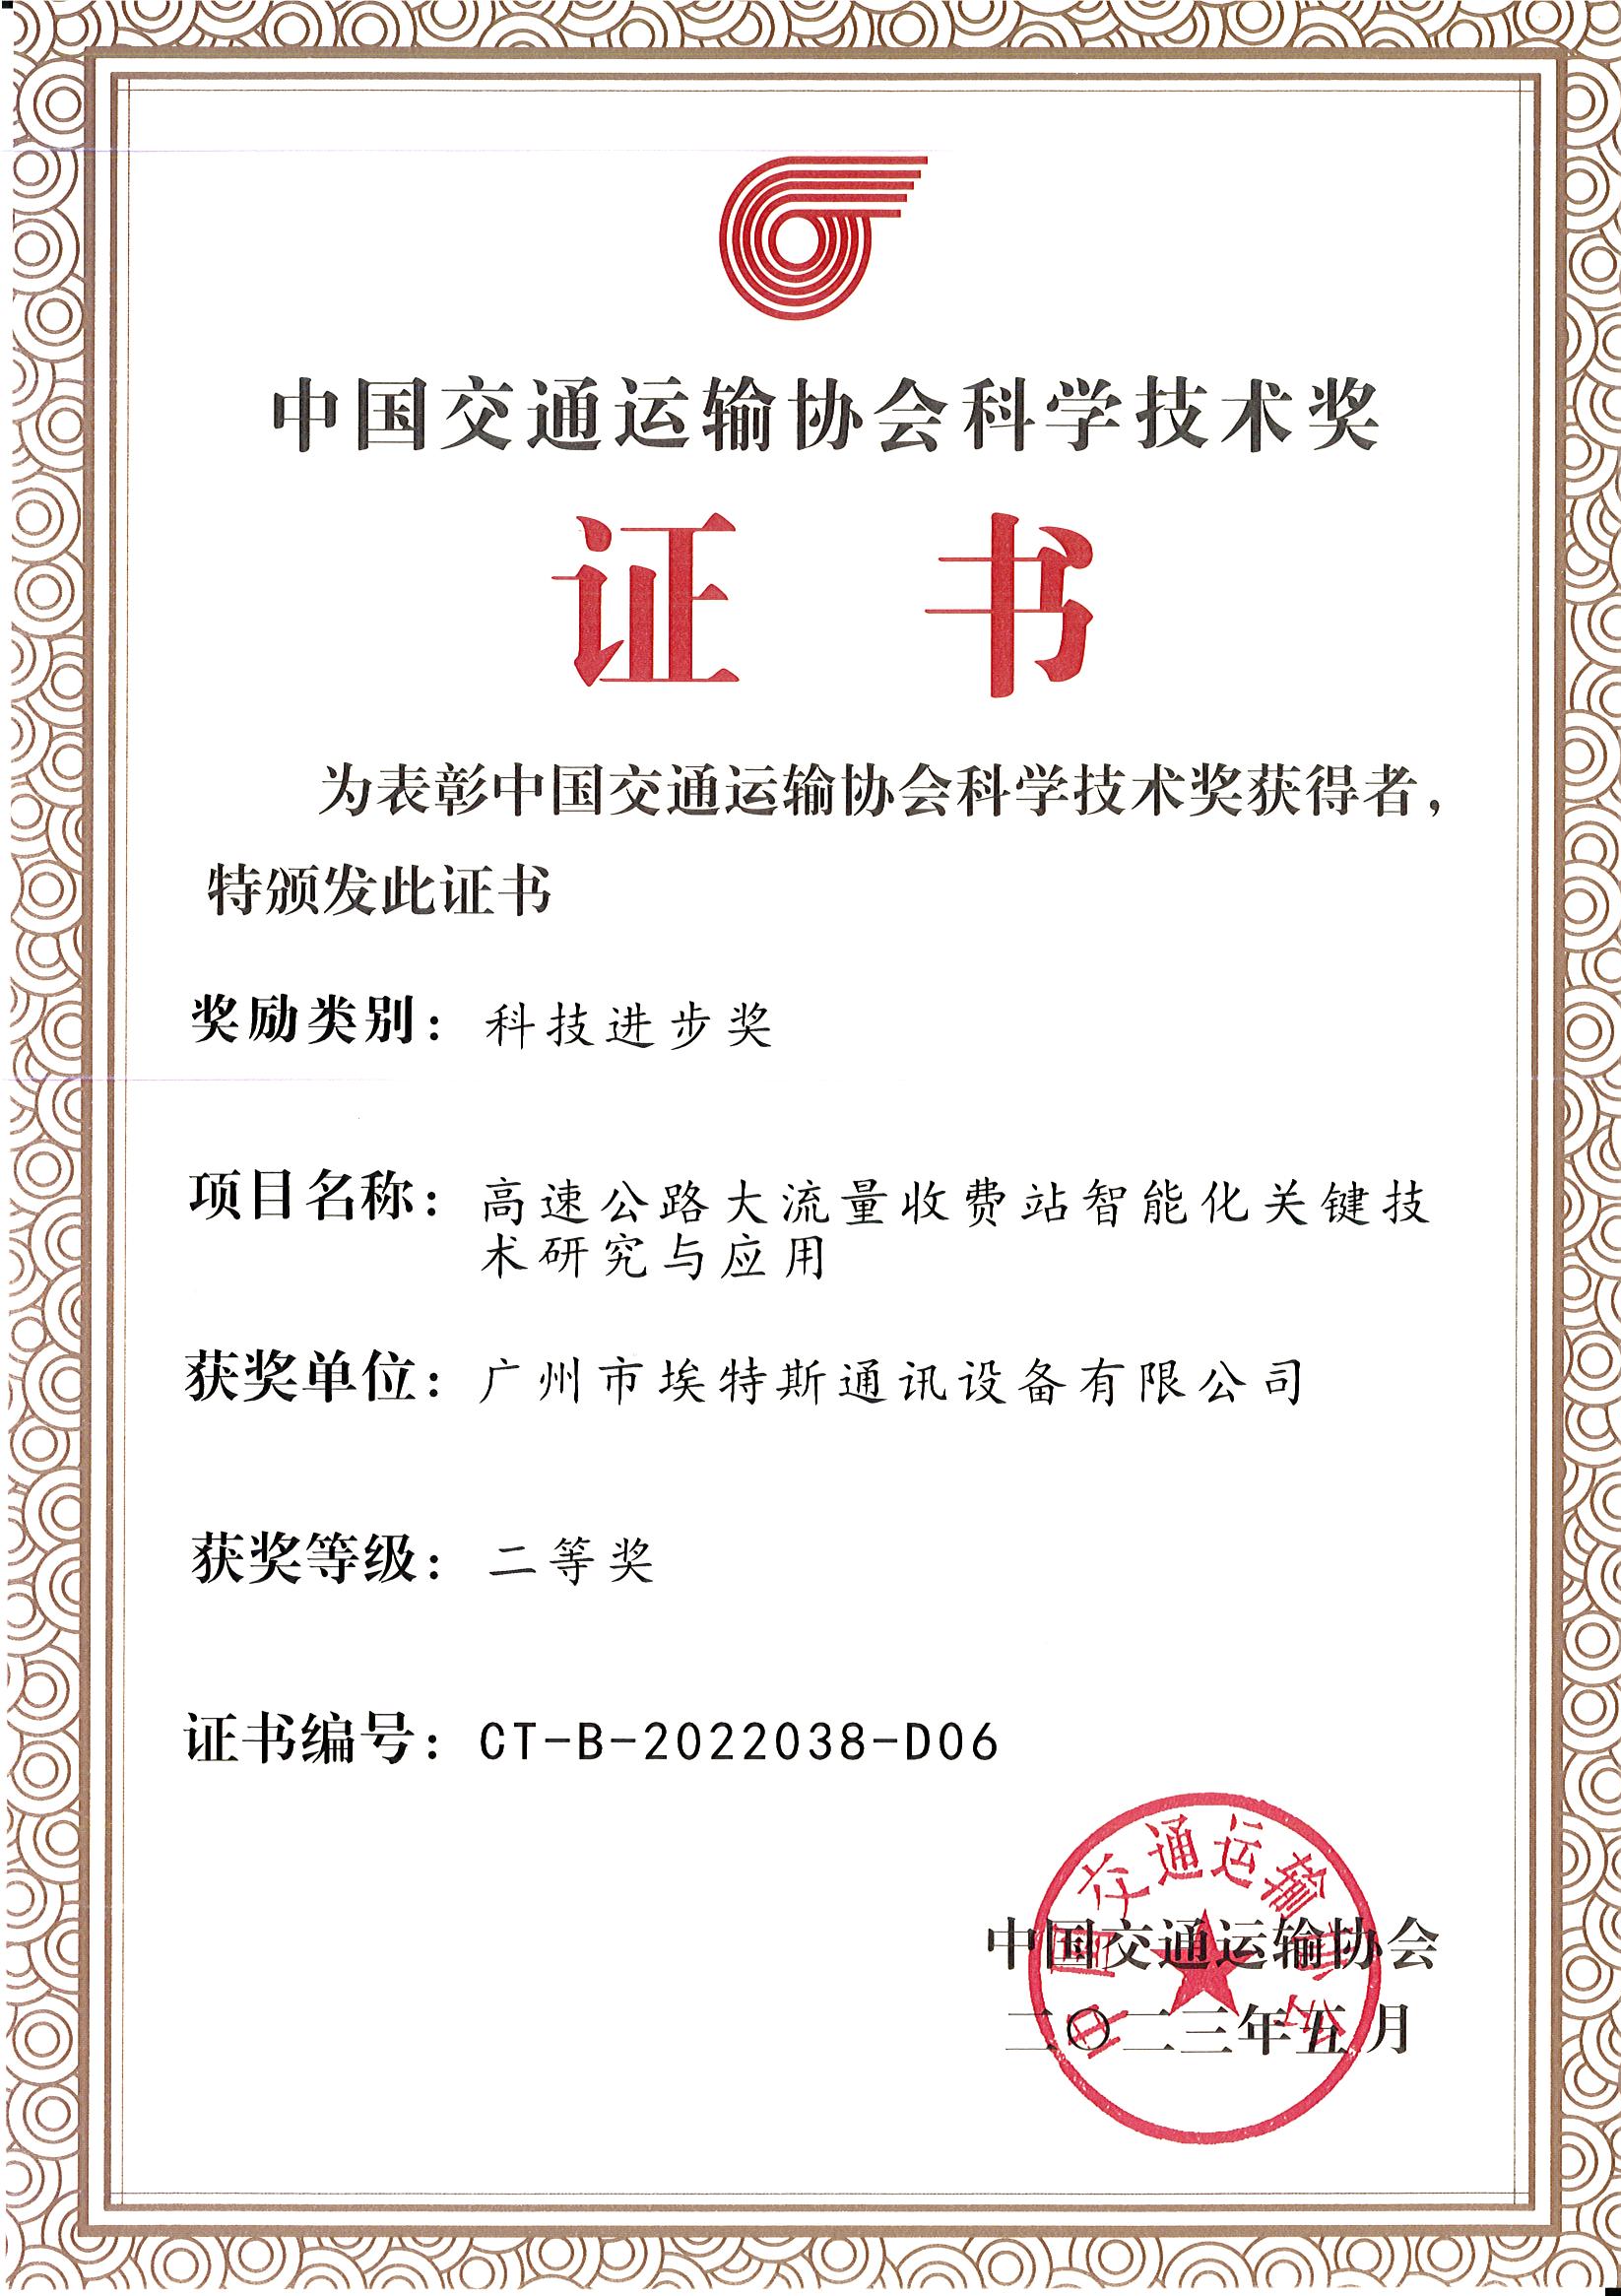 2023年5月-中国交通运输协会科学技术奖（科学进步奖）-JXF吉祥坊 - 副本.jpg